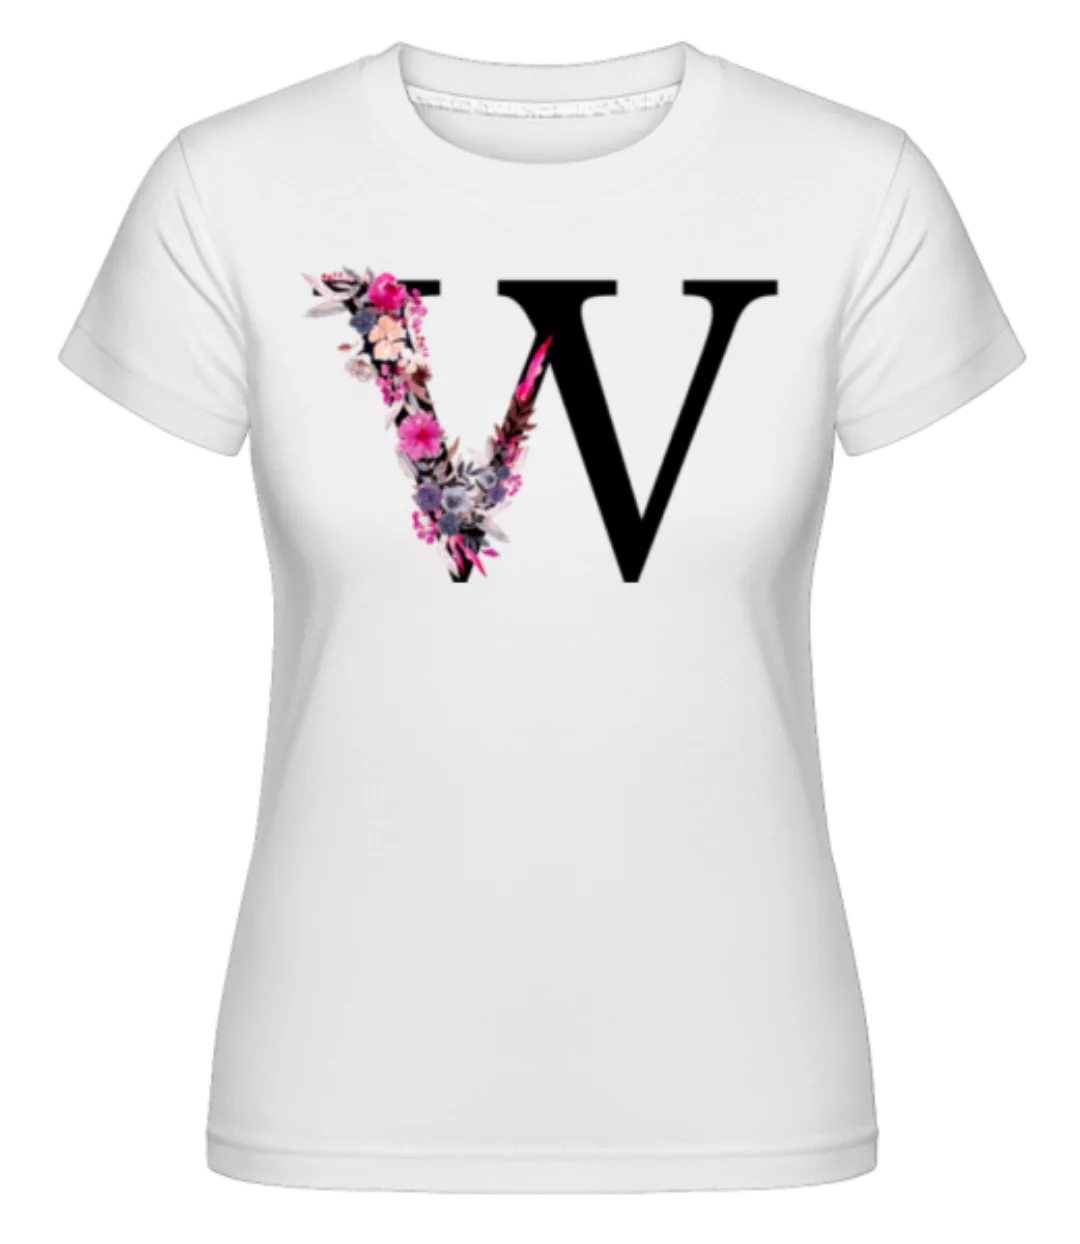 Blumen Initiale W · Shirtinator Frauen T-Shirt günstig online kaufen